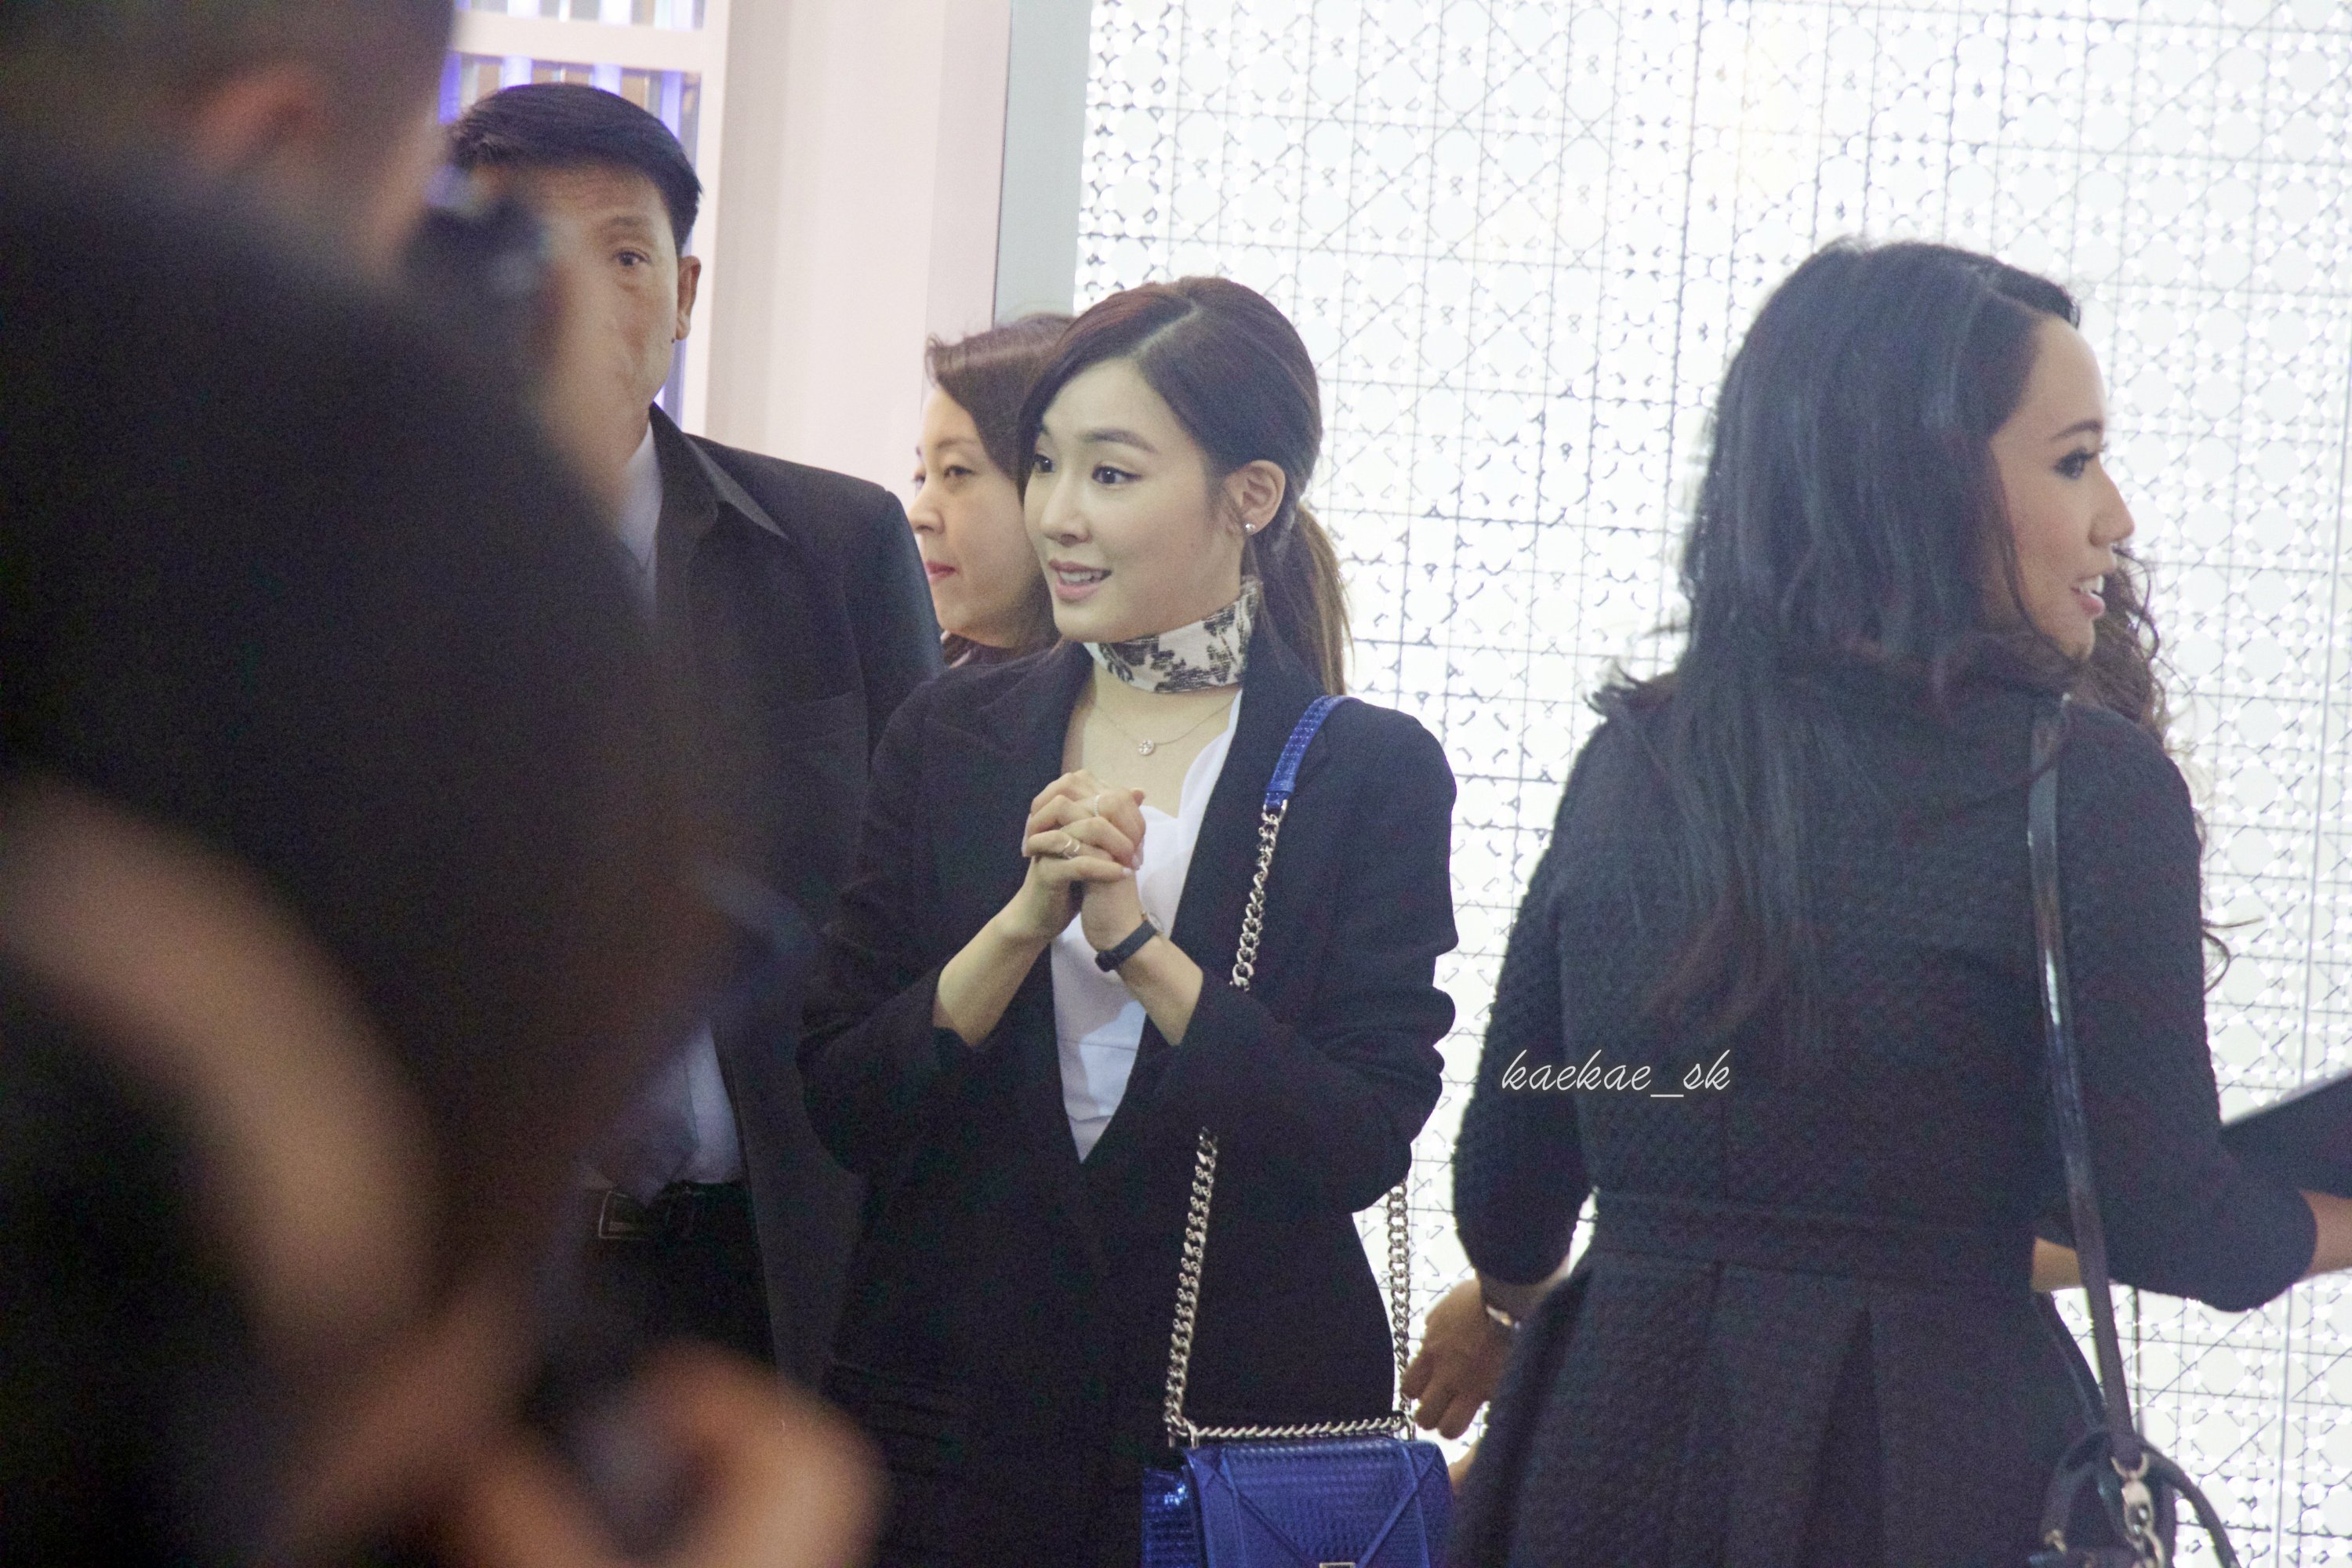 [PIC][17-02-2016]Tiffany khởi hành đi Thái Lan để tham dự sự kiện khai trương chi nhánh của thương hiệu "Christian Dior" vào hôm nay - Page 8 FFSn7xNMPq-3000x3000